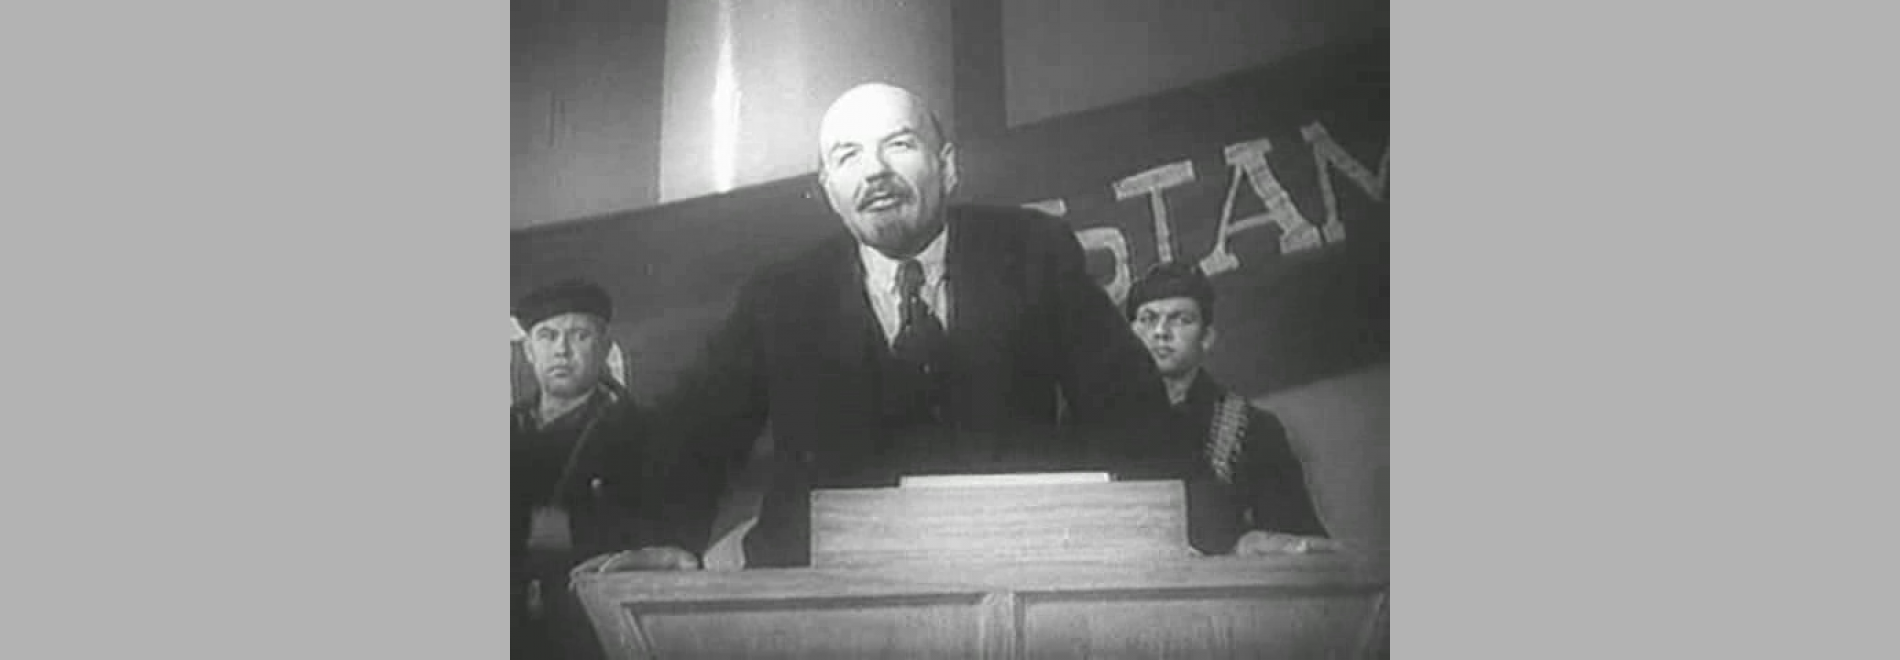 Lenin v oktyabre (Mikhail Romm, Dmitri Vasilyev, 1937)